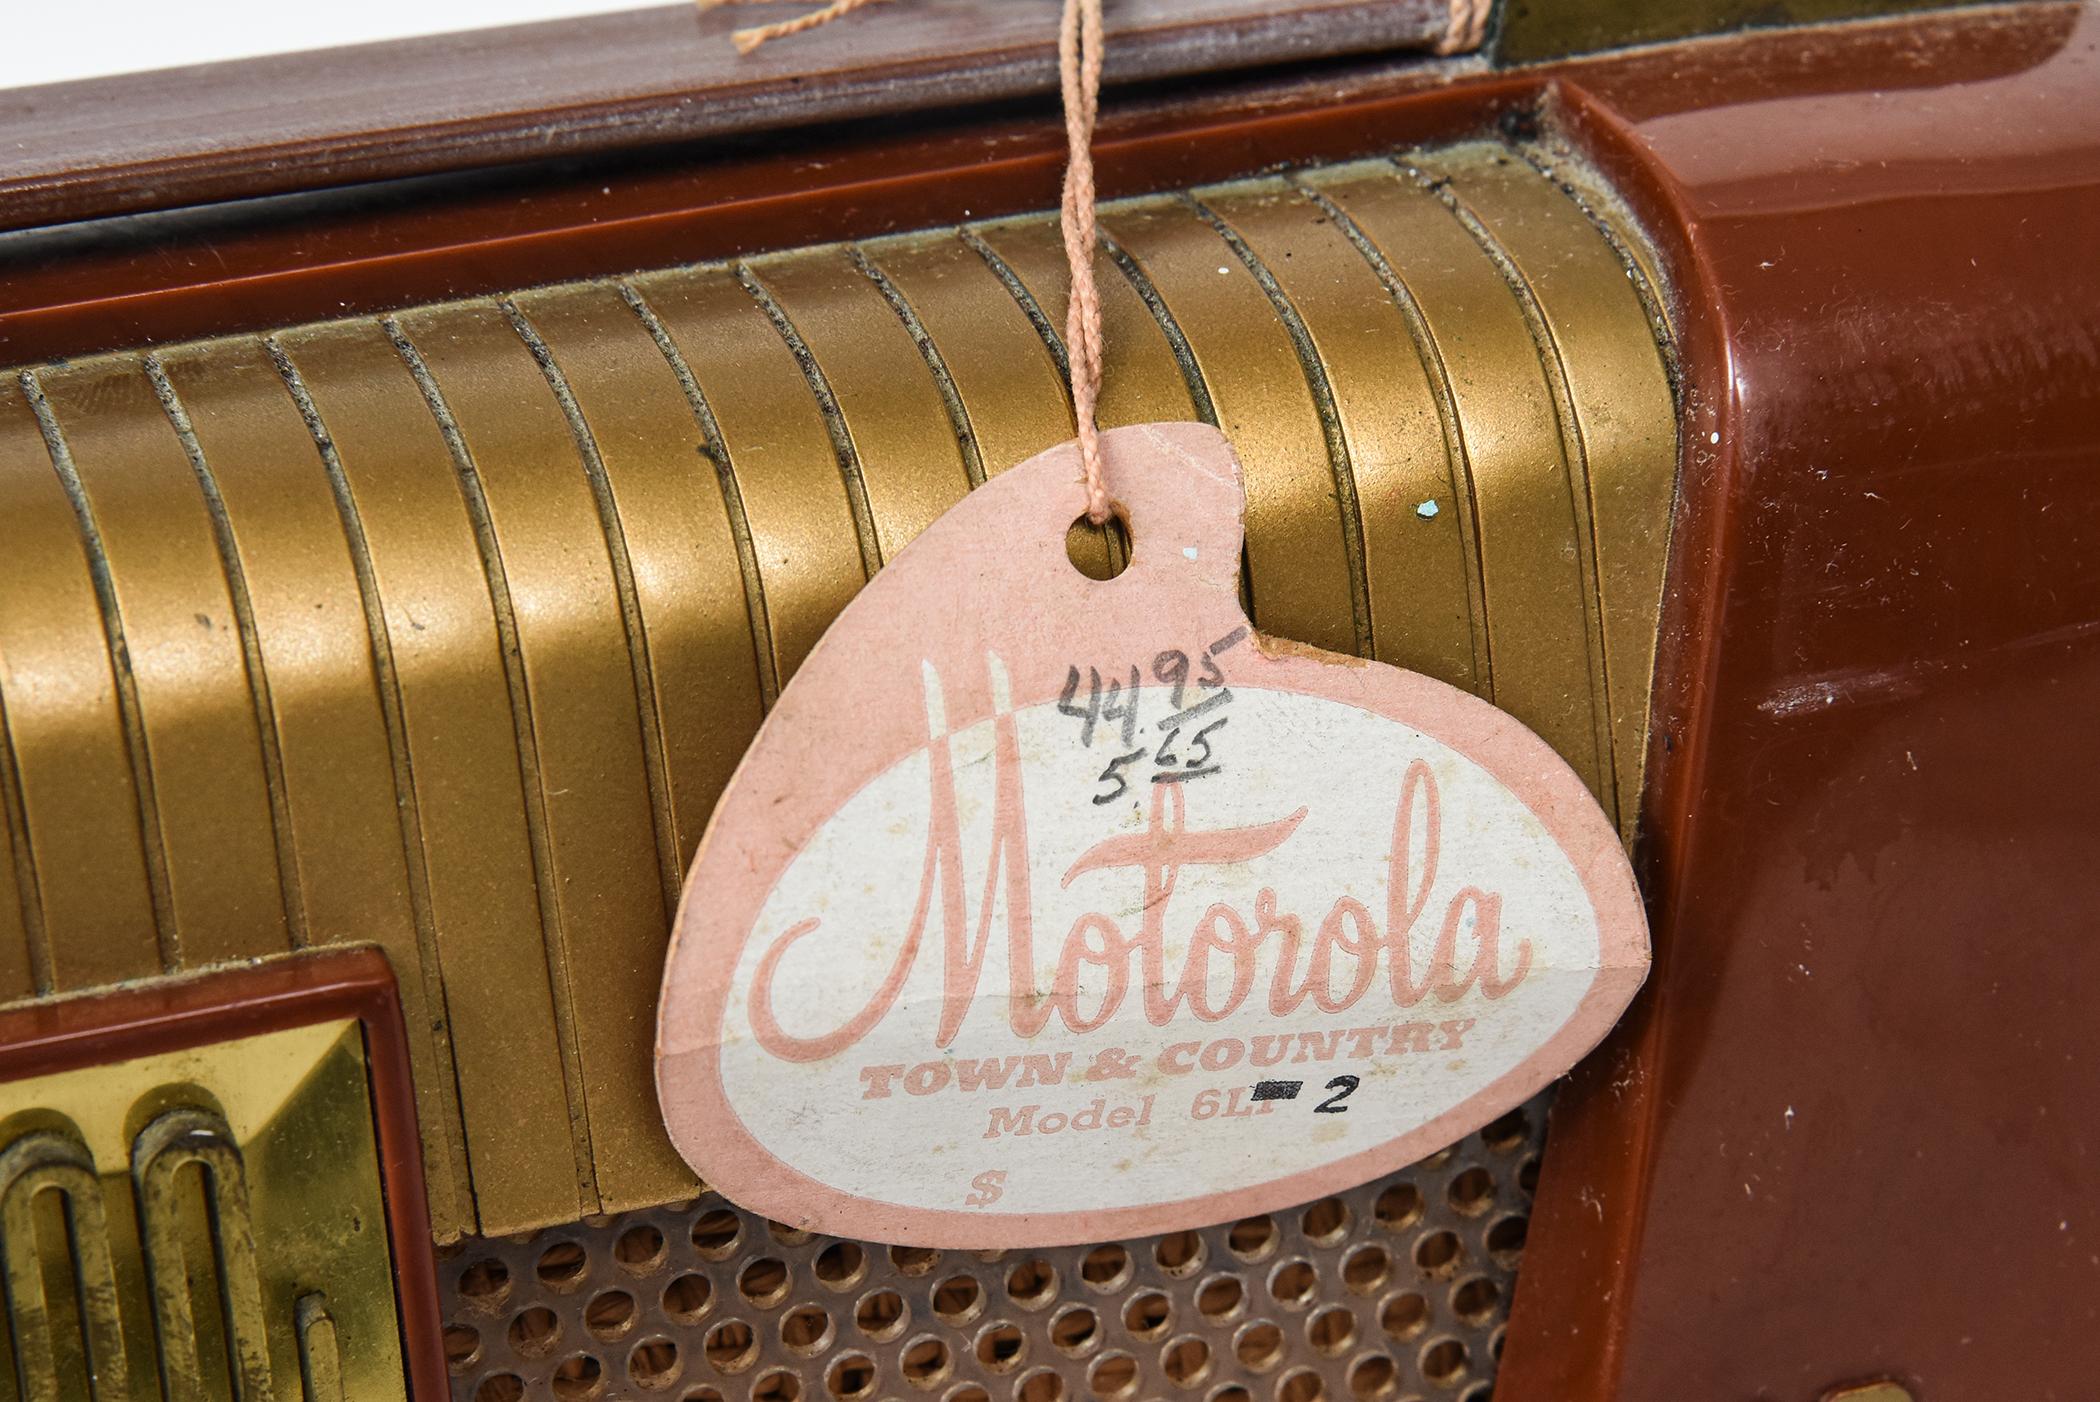 1950s radio